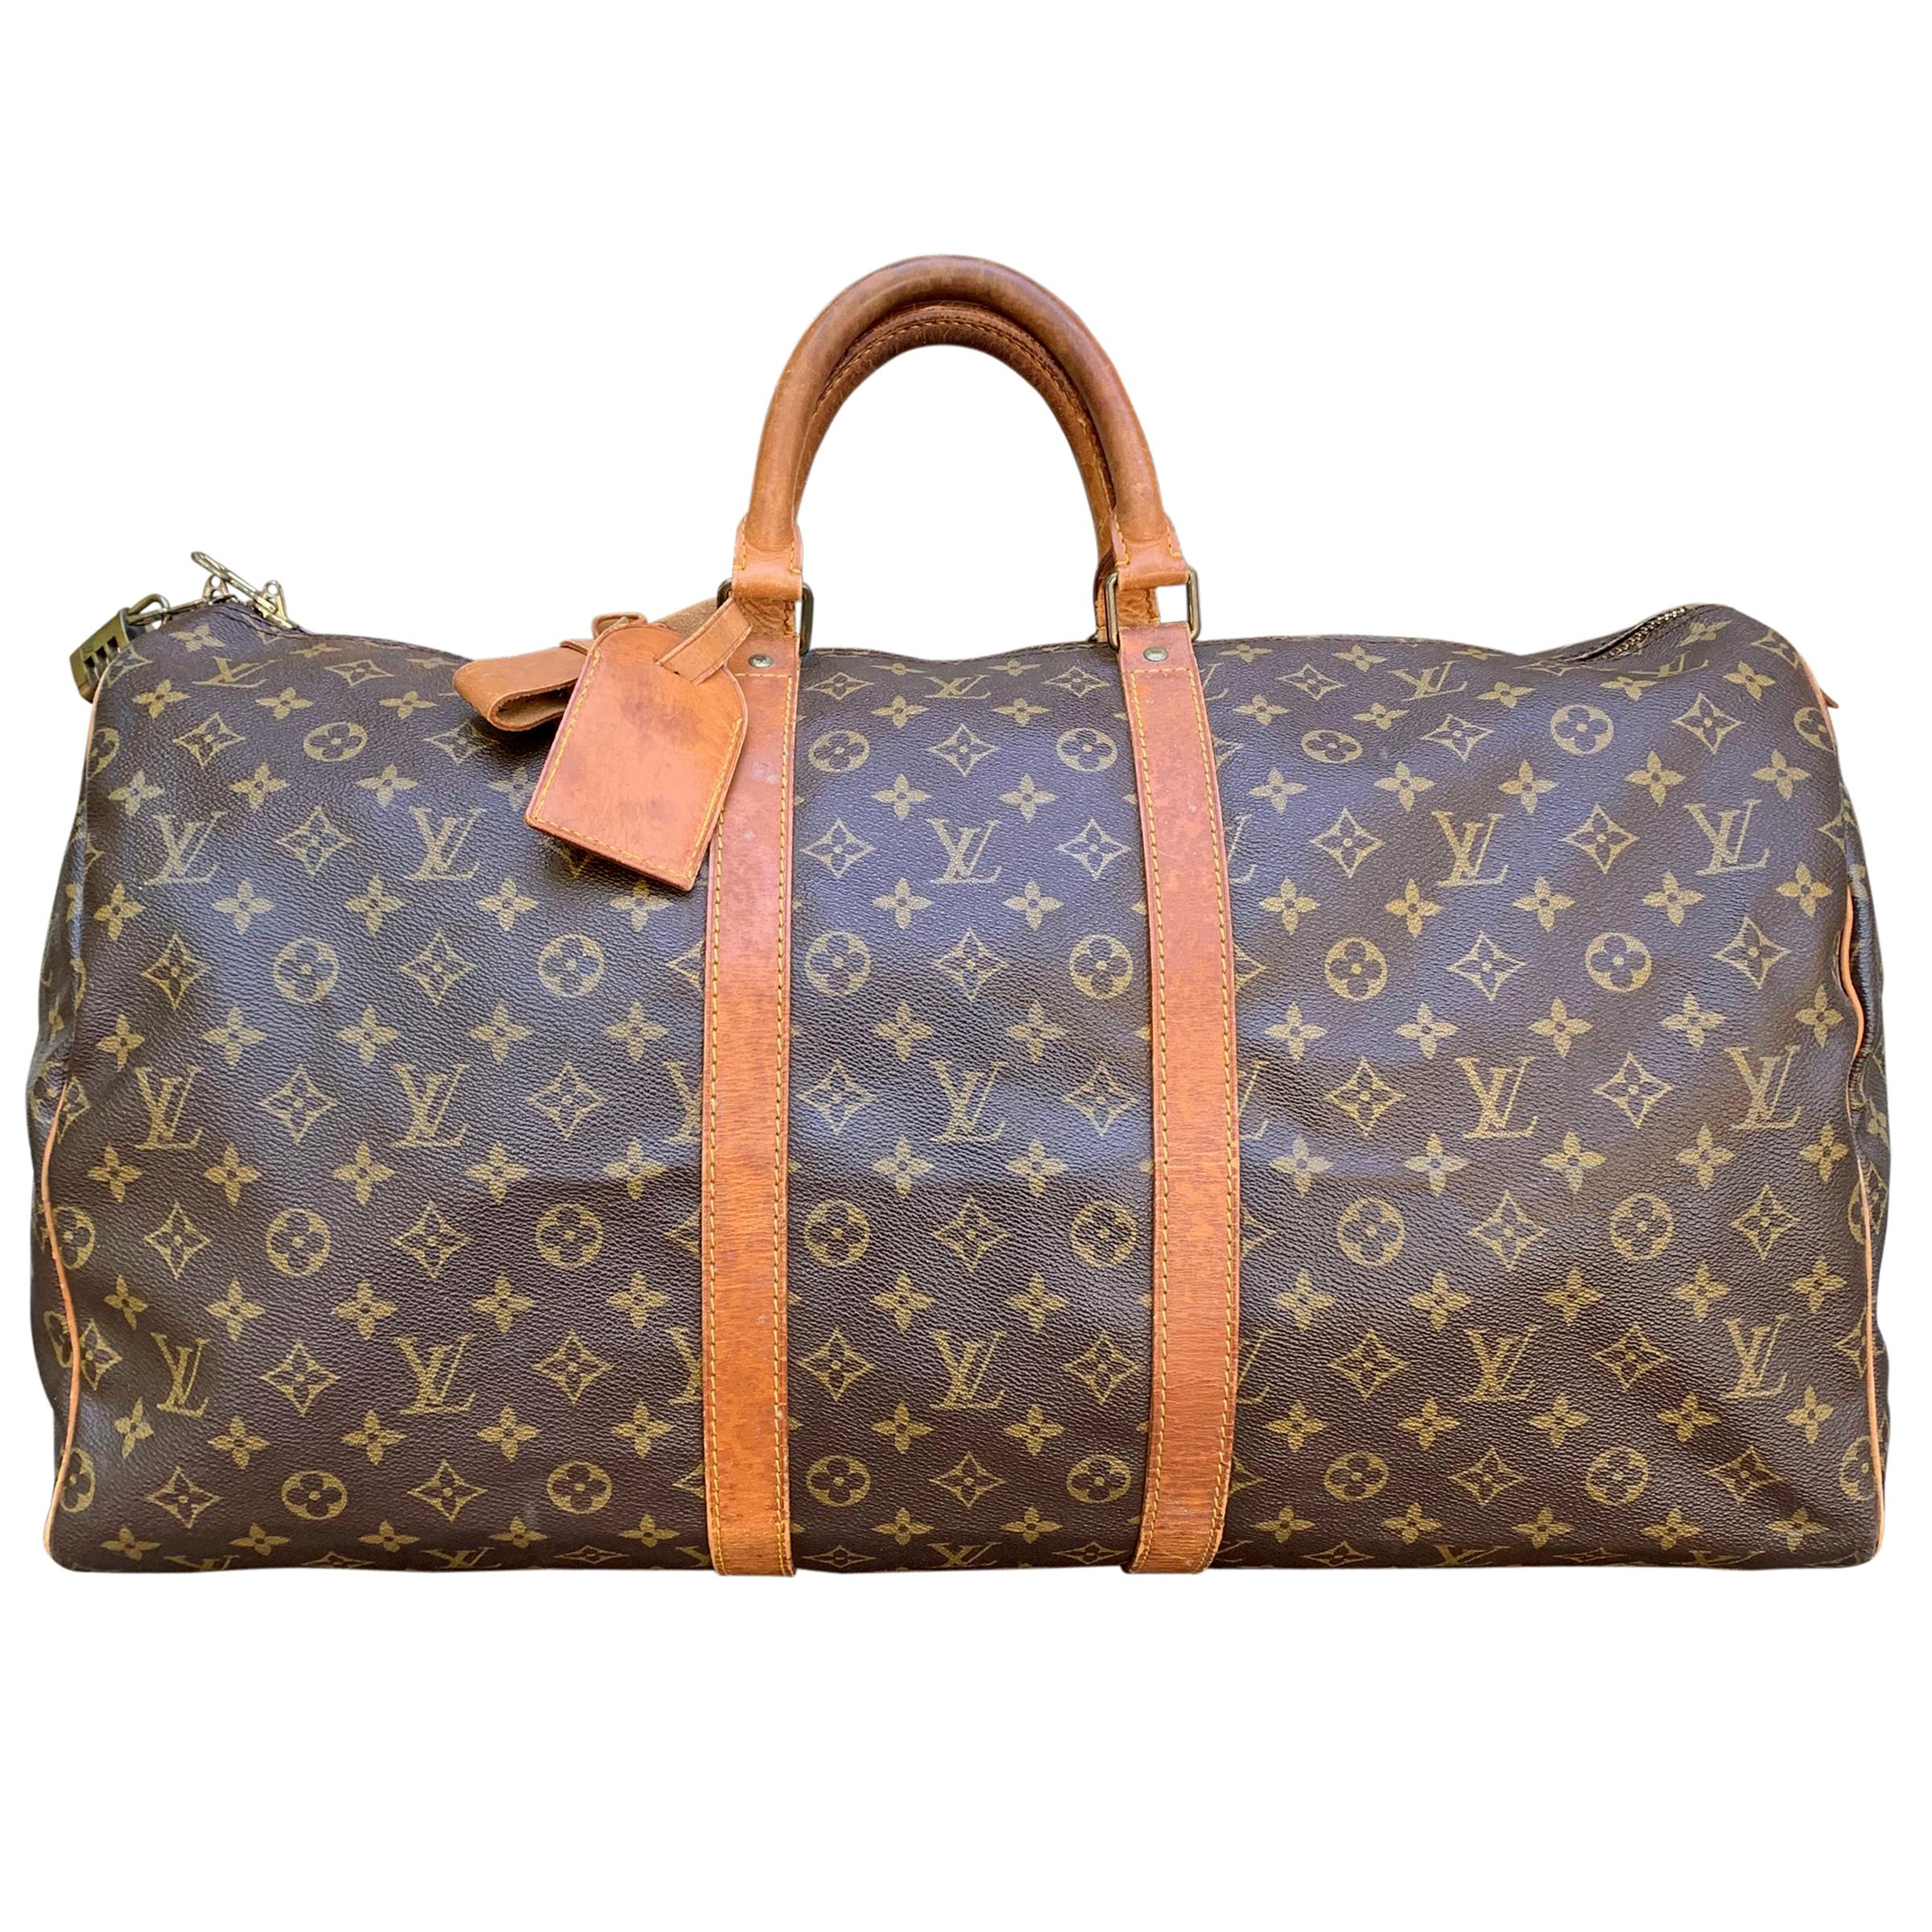 Sold at Auction: Vintage Louis Vuitton Duffle Bag